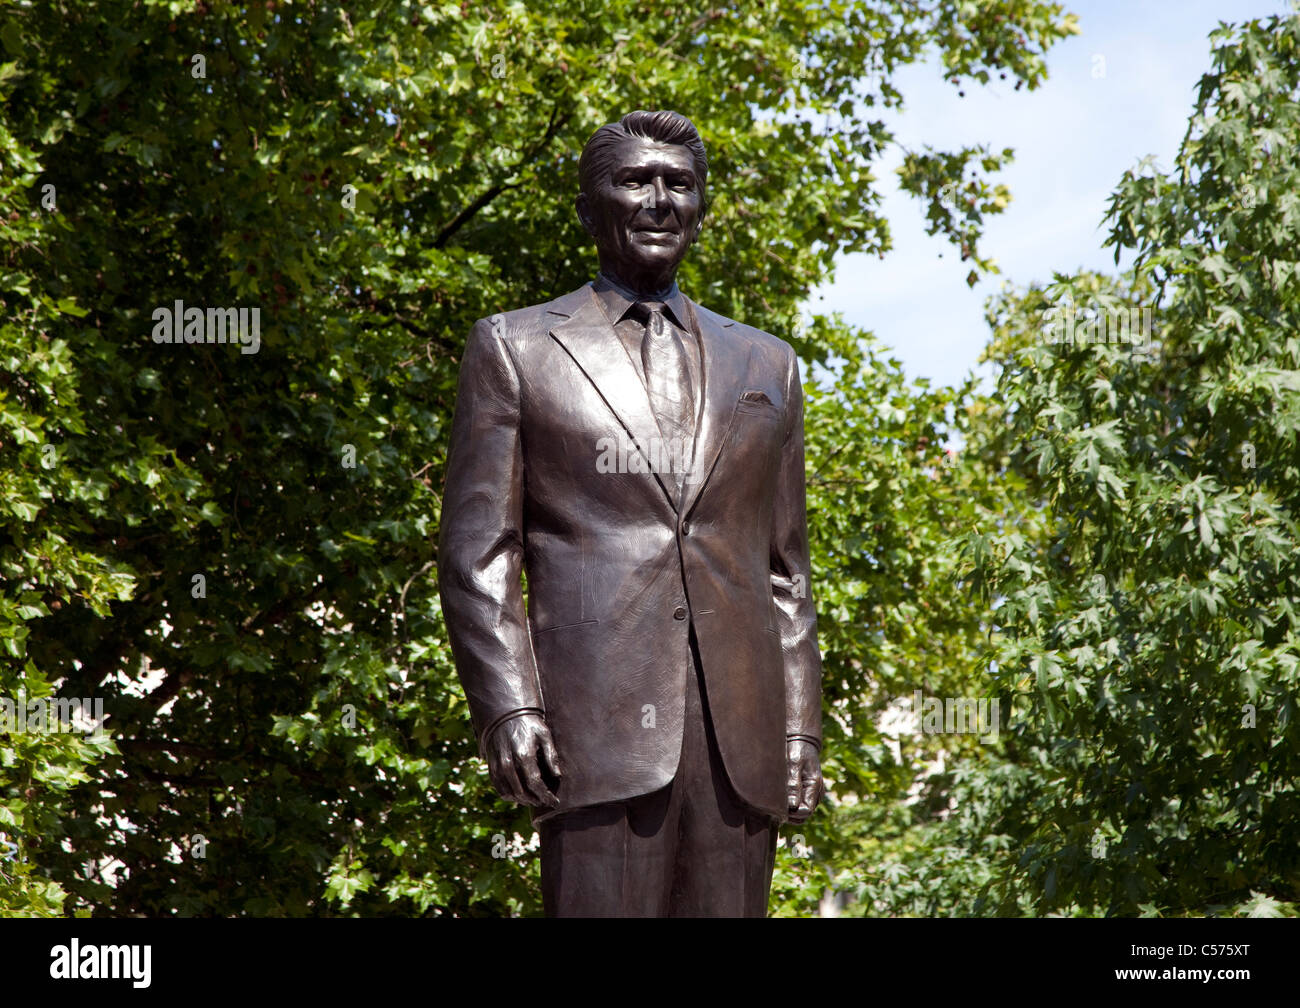 Ronald Reagan statue, Grosvenor Square, London Stock Photo